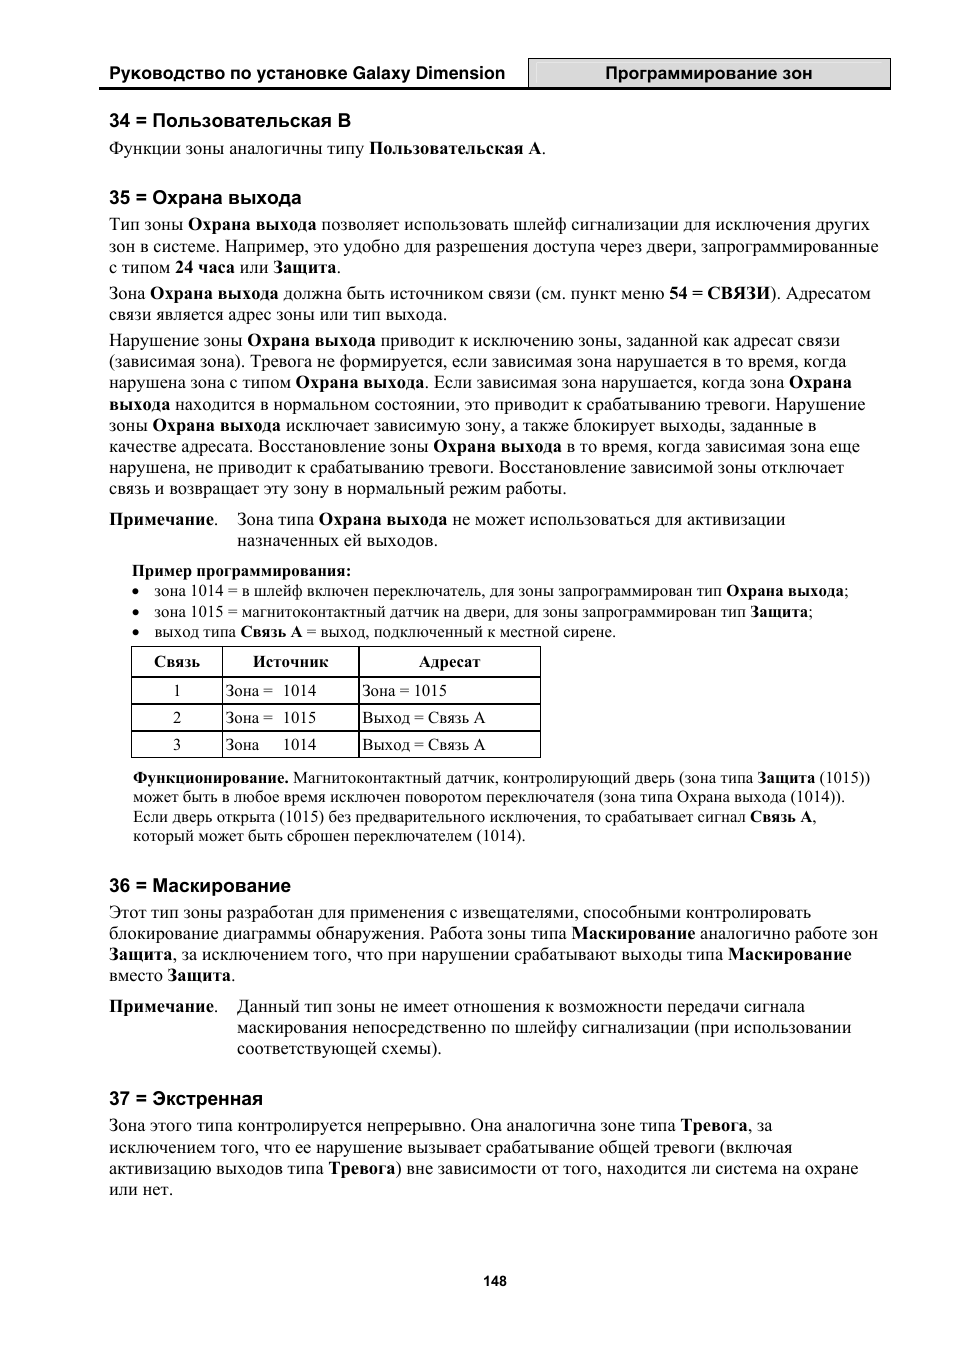 Инструкция по эксплуатации Honeywell Руководство по установке контрольных панелей серии Galaxy Dimension | Страница 148 / 260